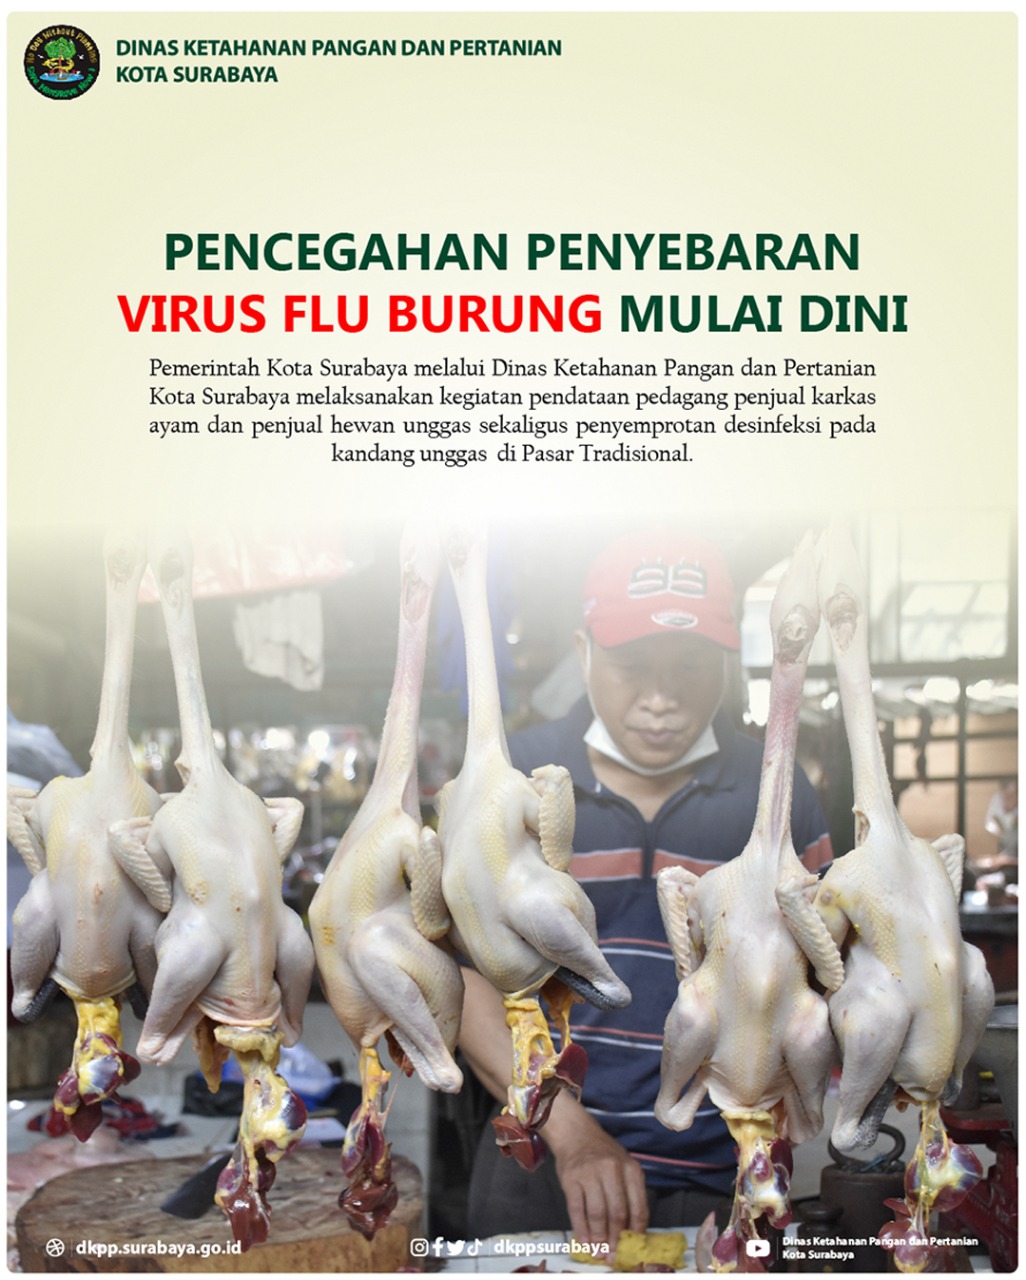 Desinfeksi Pasar sebagai Upaya Pencegahan Penyebaran Virus Flu Burung